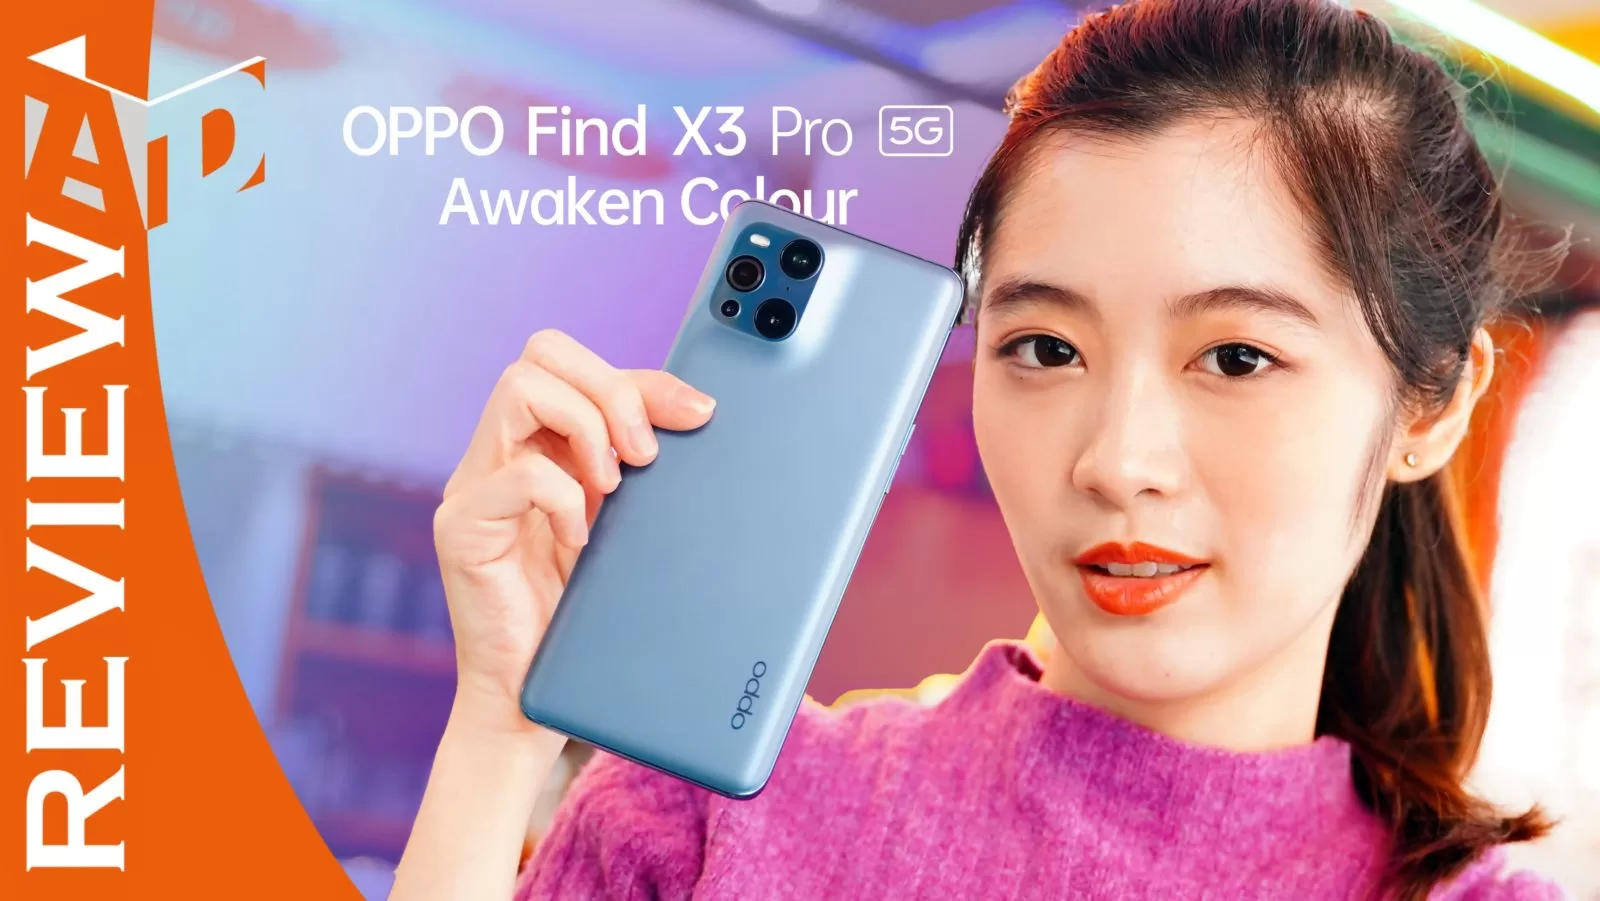 OPPO Find X3 Pro 5G Review | Find x3 Pro | รีวิว OPPO Find X3 Pro 5G ยอดเยี่ยมในทุกด้าน สมาร์ทโฟนที่ถ่ายภาพและแสดงผลได้หนึ่งพันล้านสีรุ่นแรกของโลก